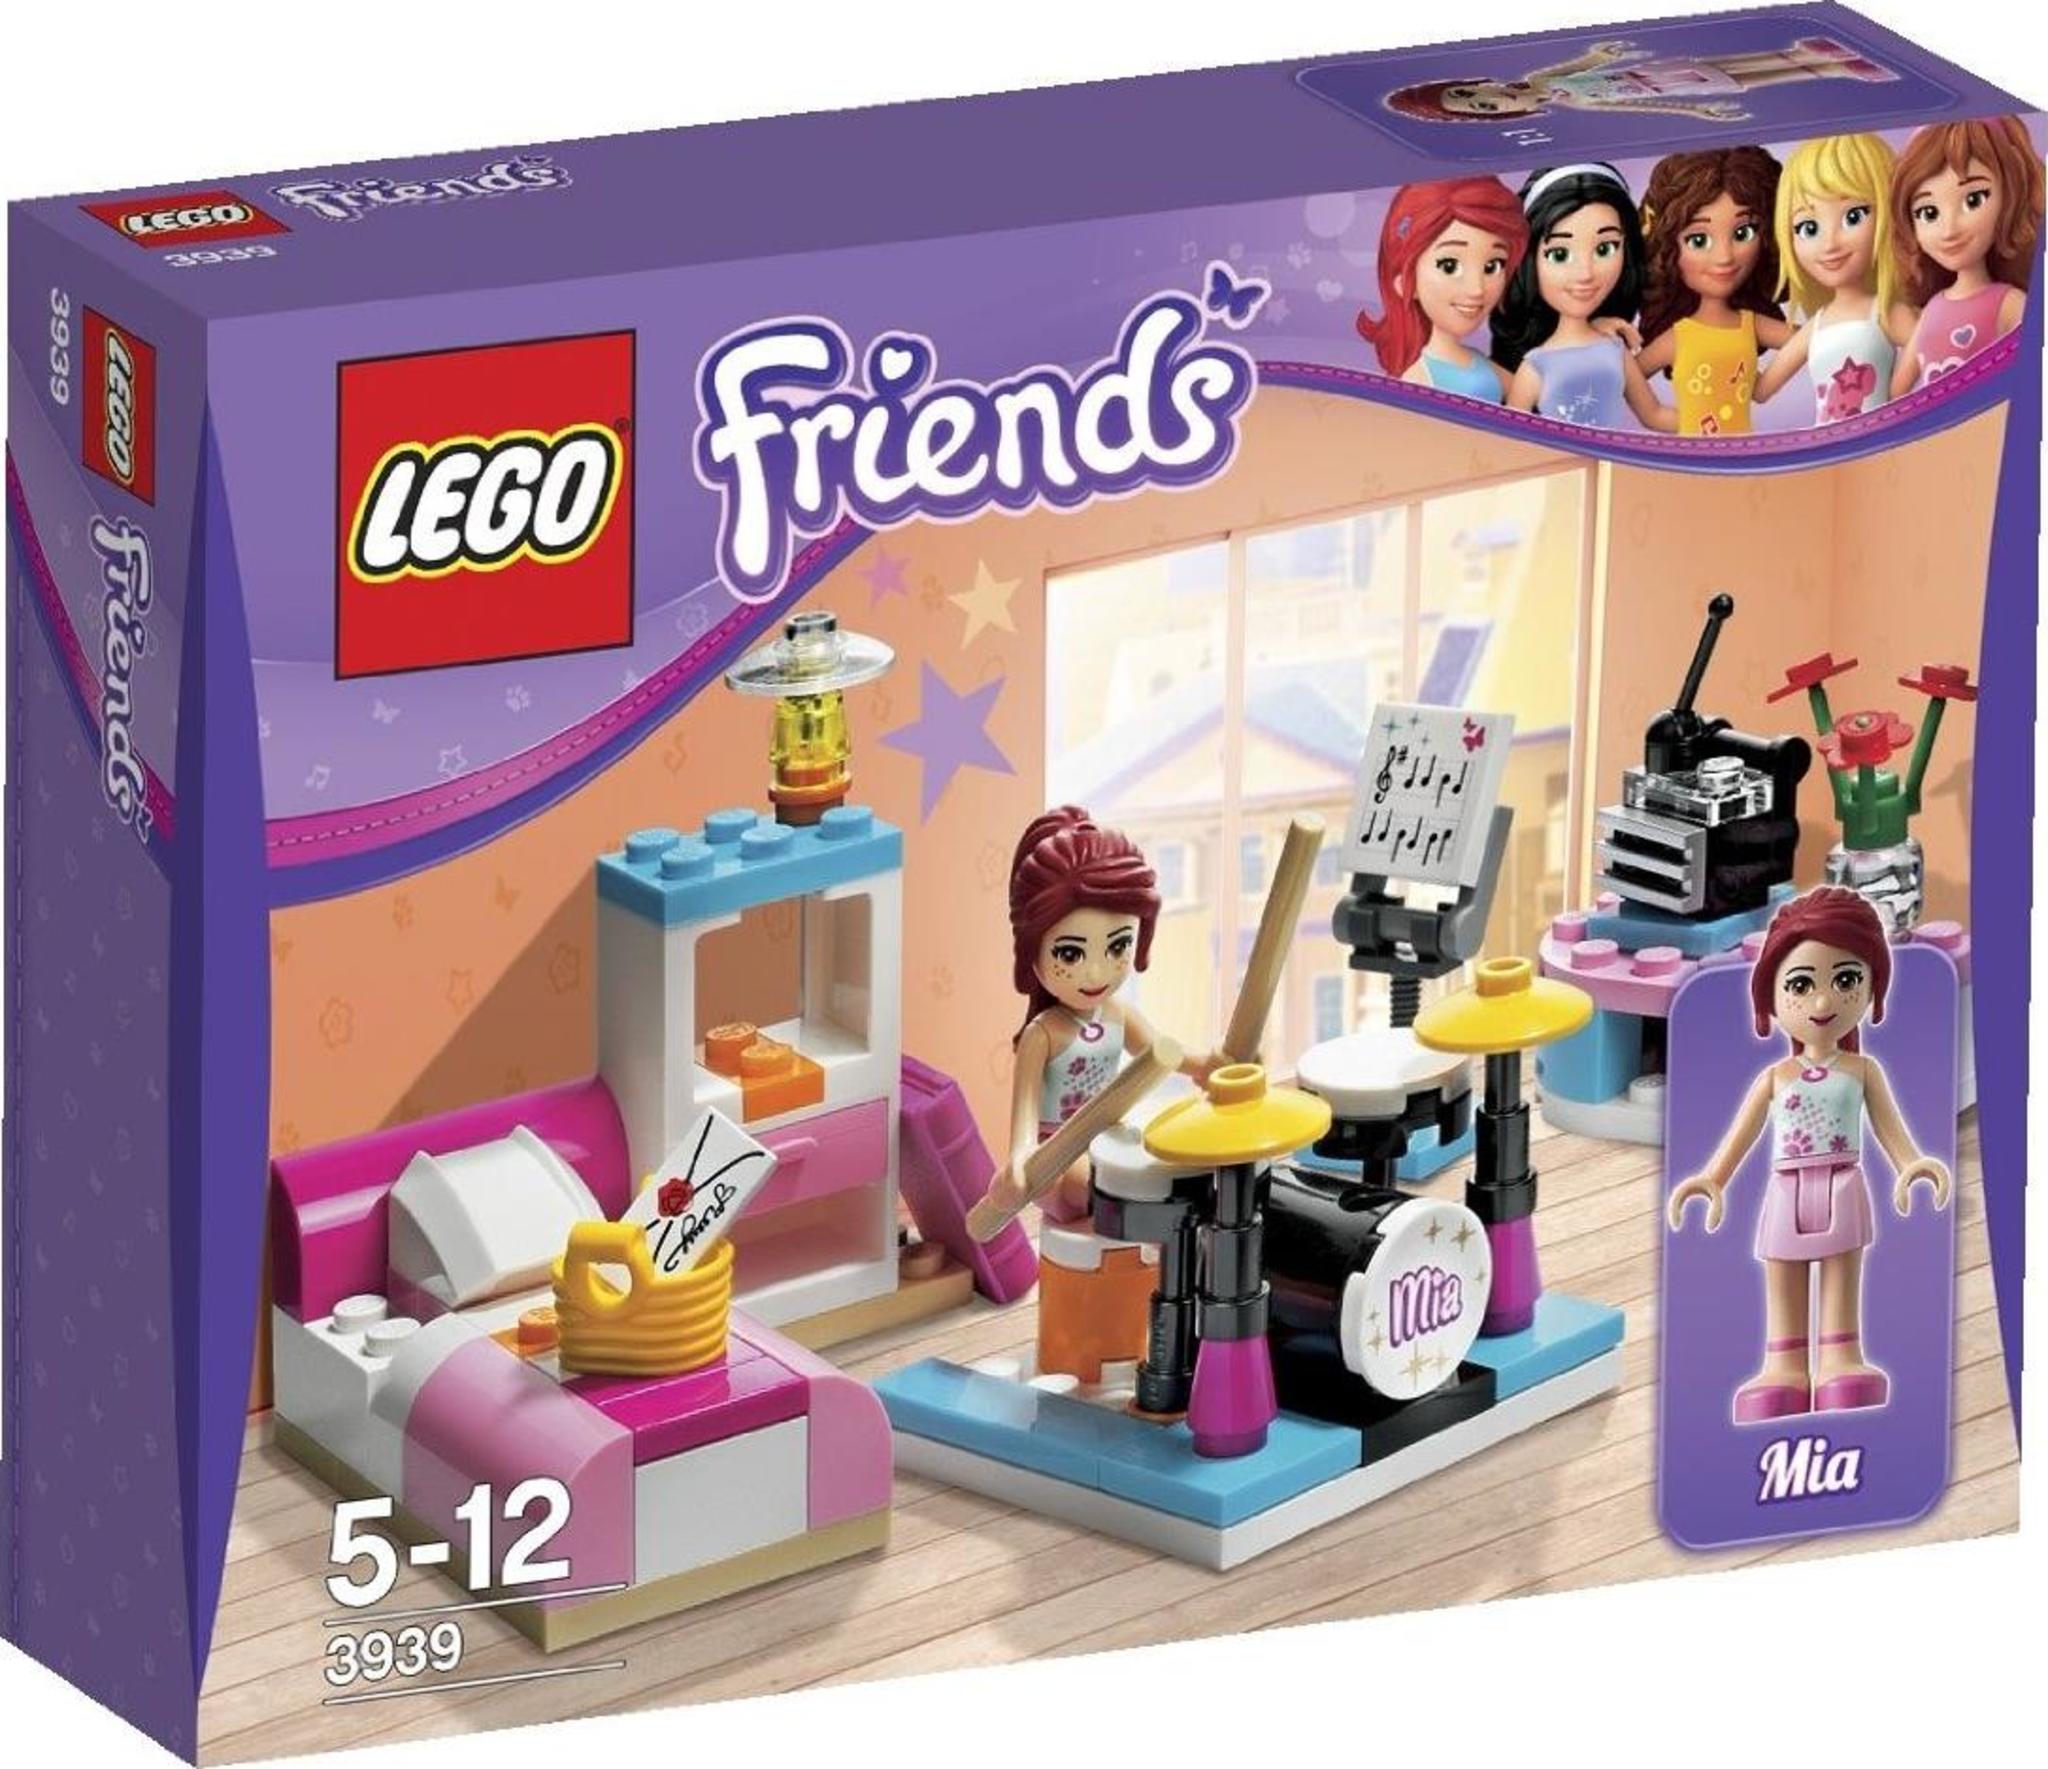 LEGO Friends 3939 - Mia's Bedroom | Mattonito